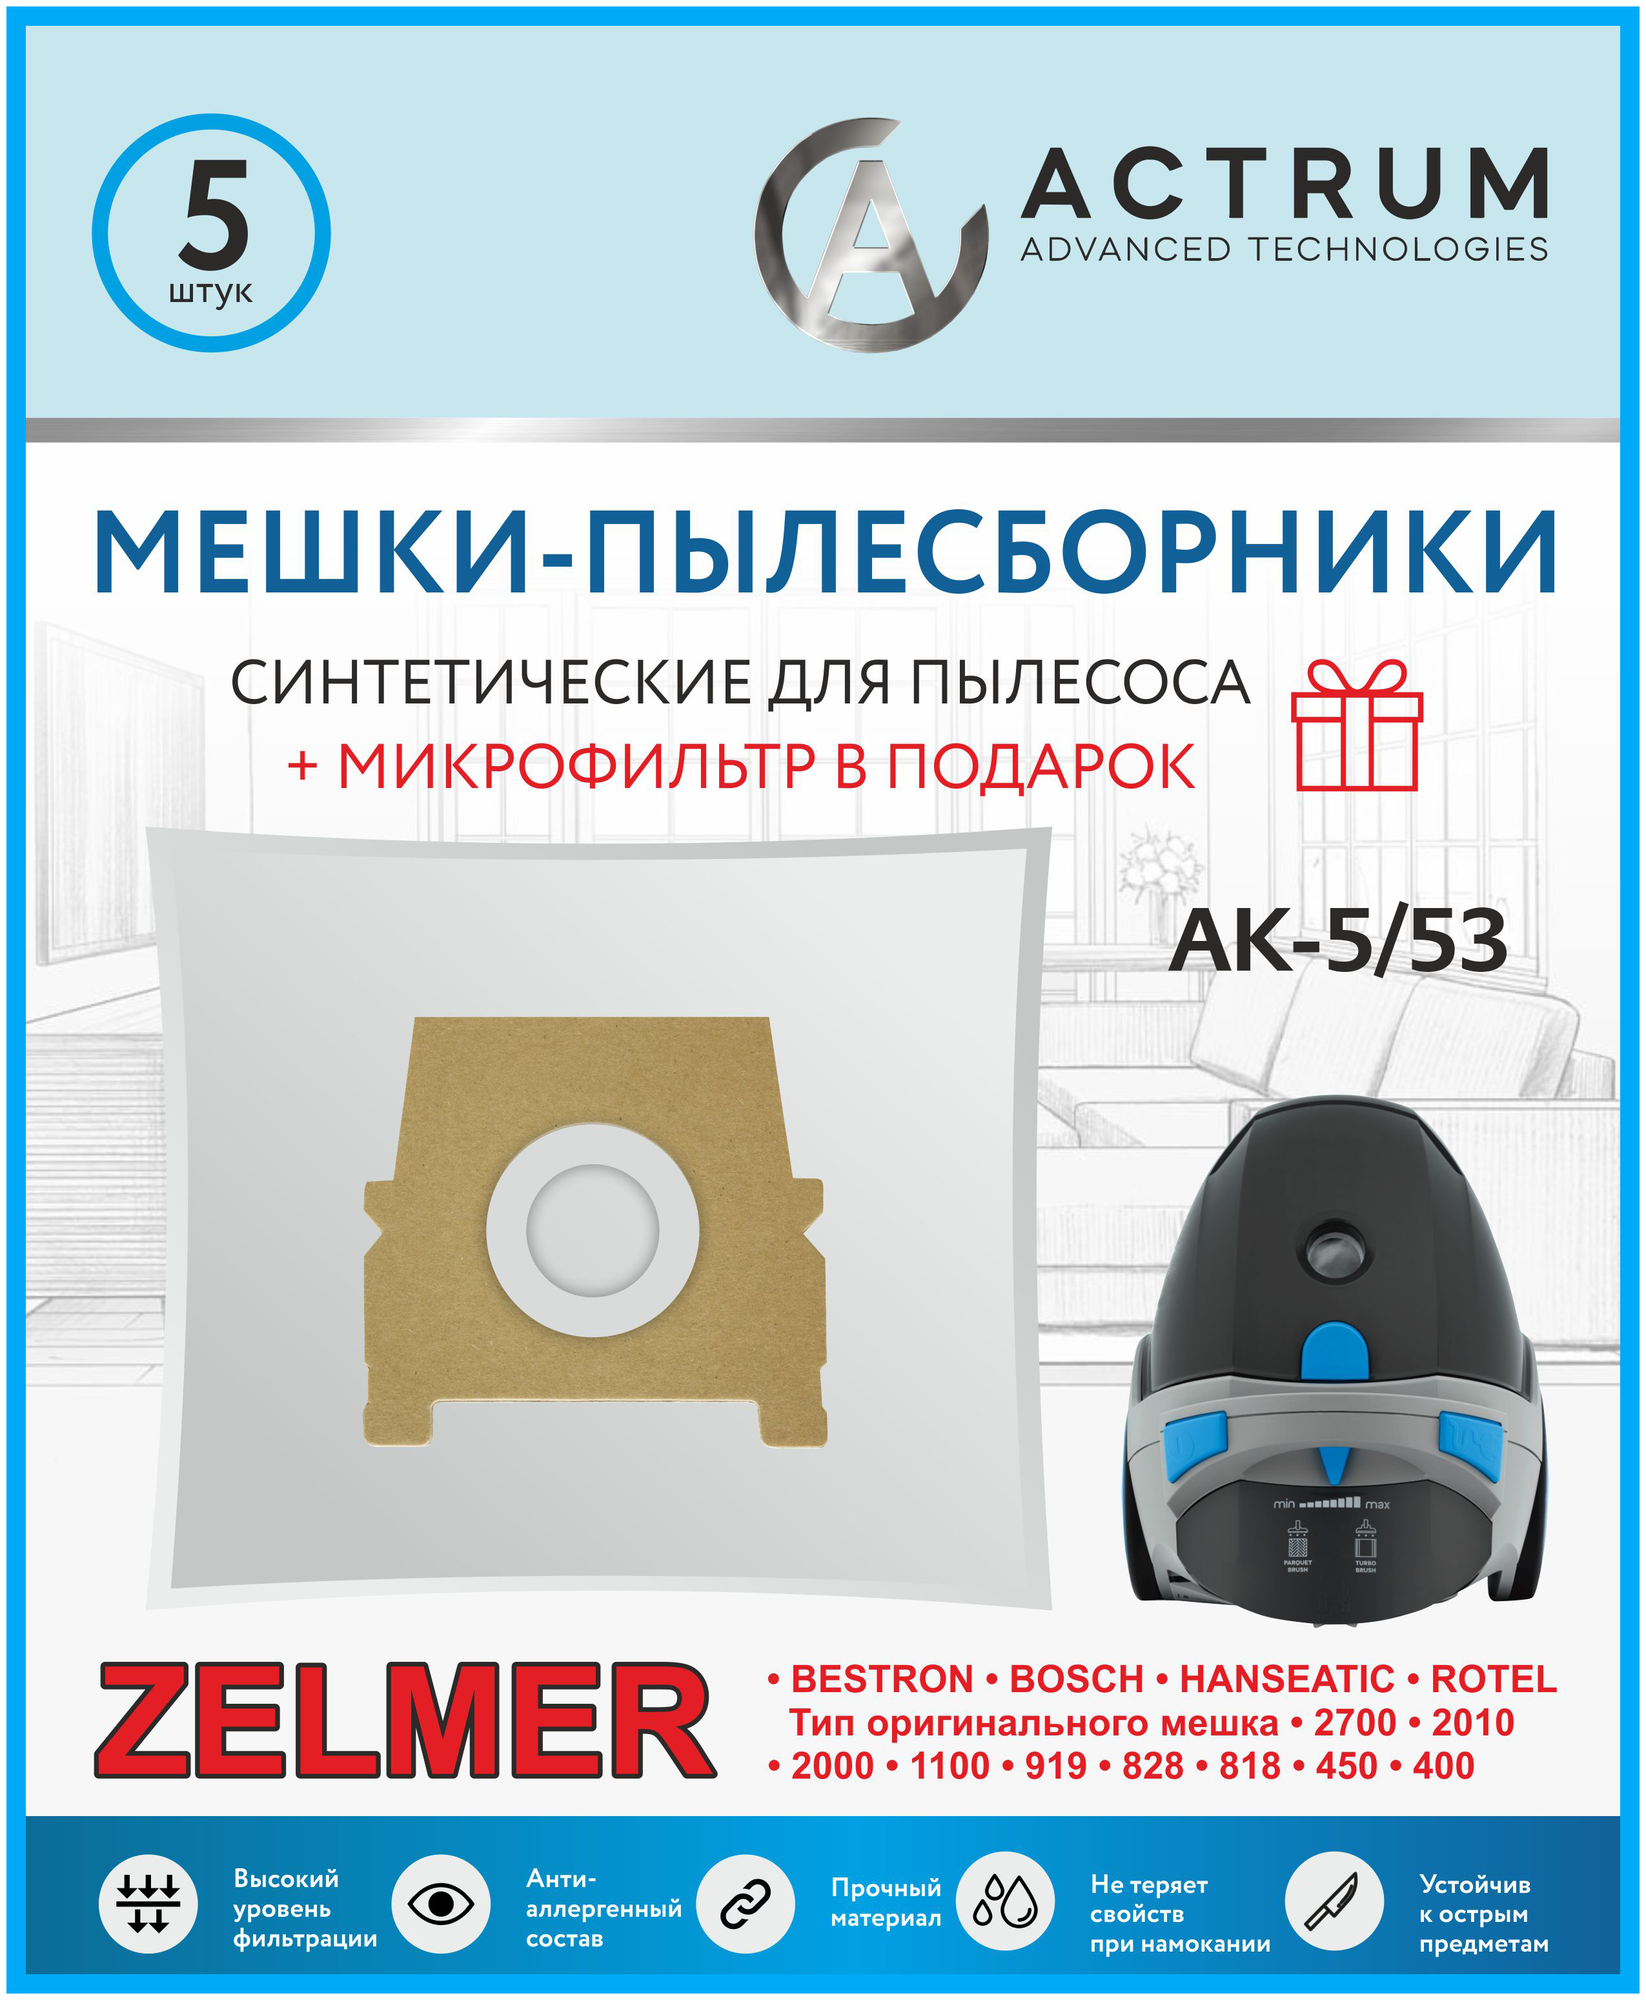 Мешки-пылесборники ACTRUM AK-5/53 для пылесосов ZELMER + микрофильтр